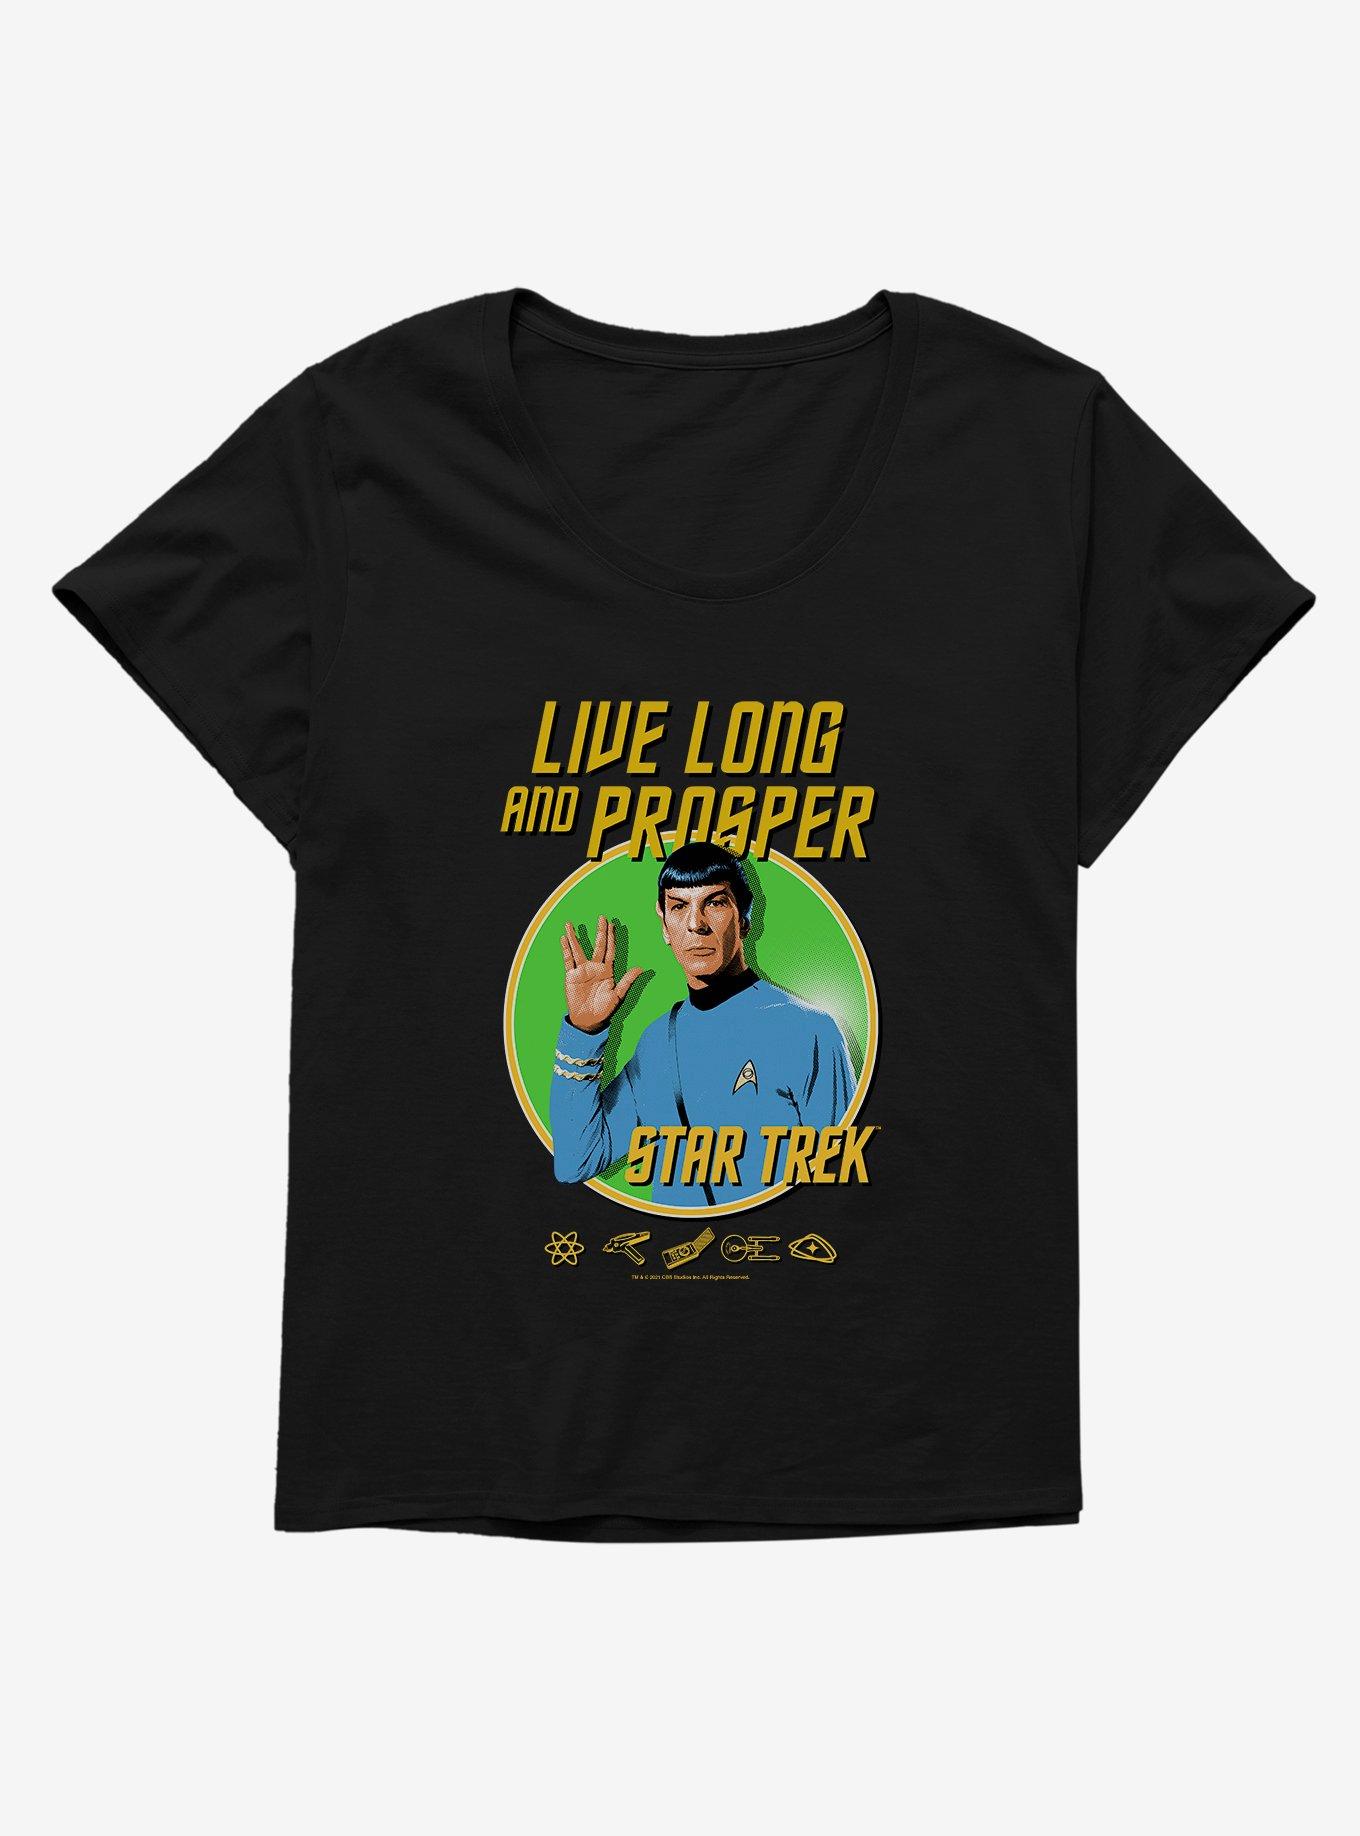 Star Trek Live Long And Prosper Girls T-Shirt Plus